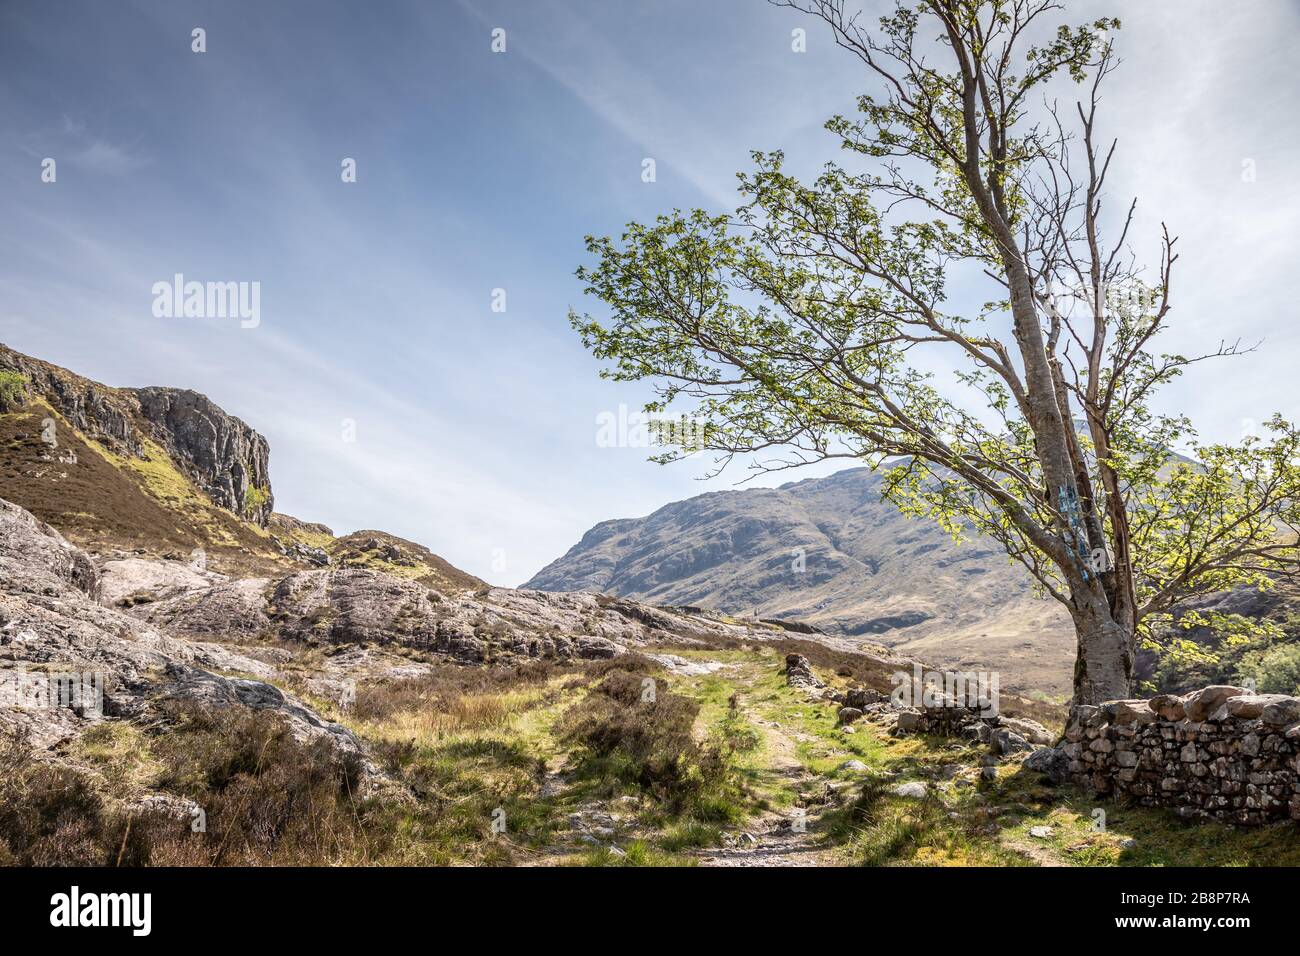 Rural scene near Glen Coe, Highlands, Scotland, UK - May 14th 2019 Stock Photo